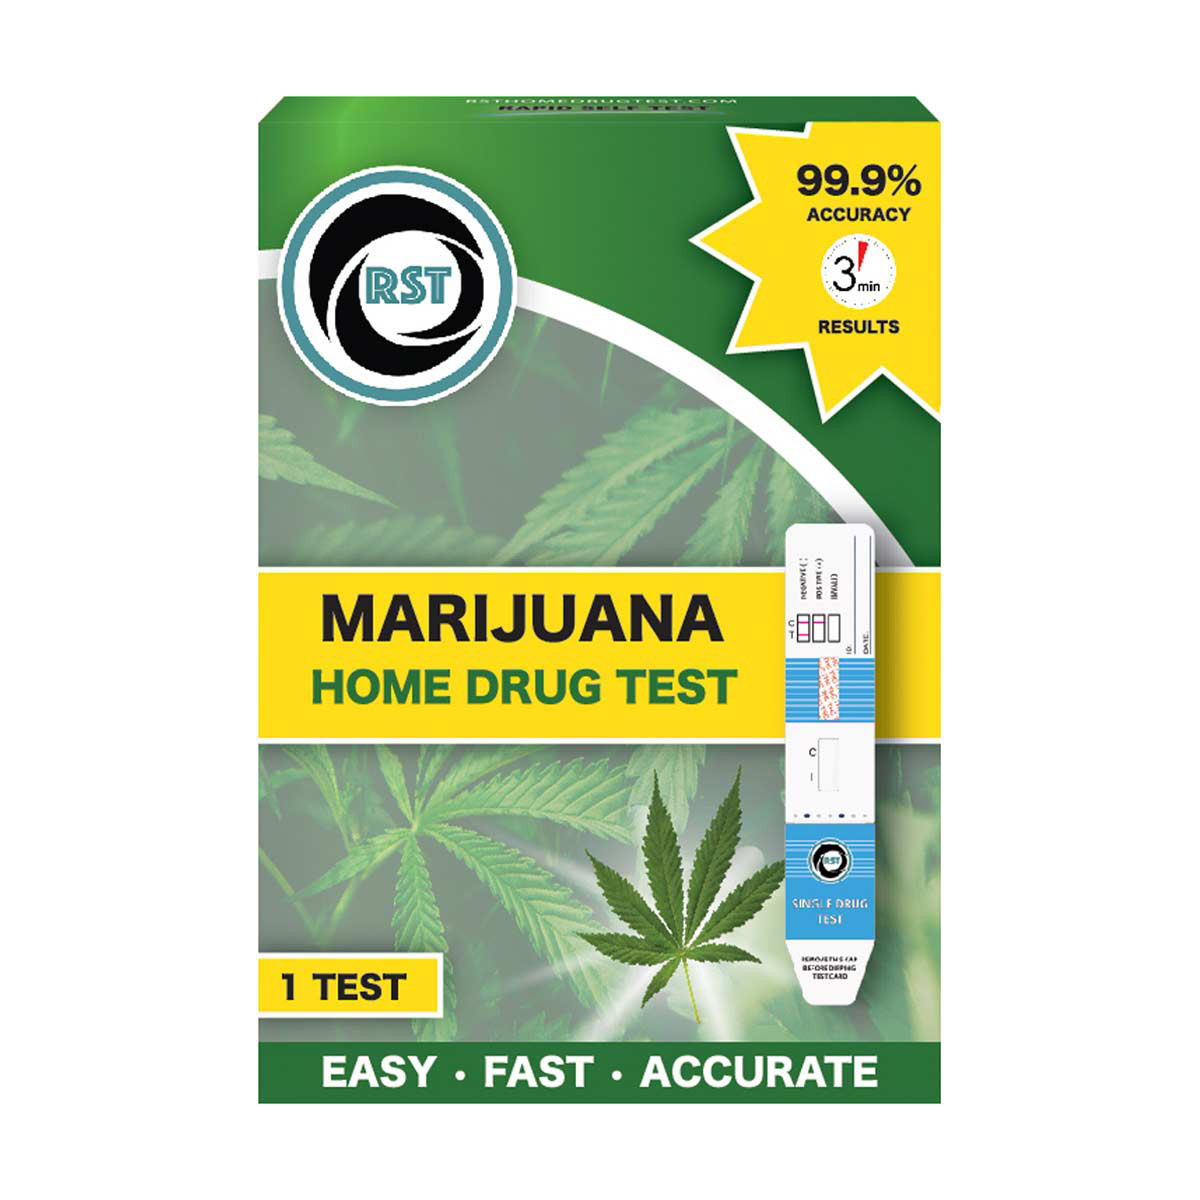 Rst Home Drug Test Kit - Marijuana